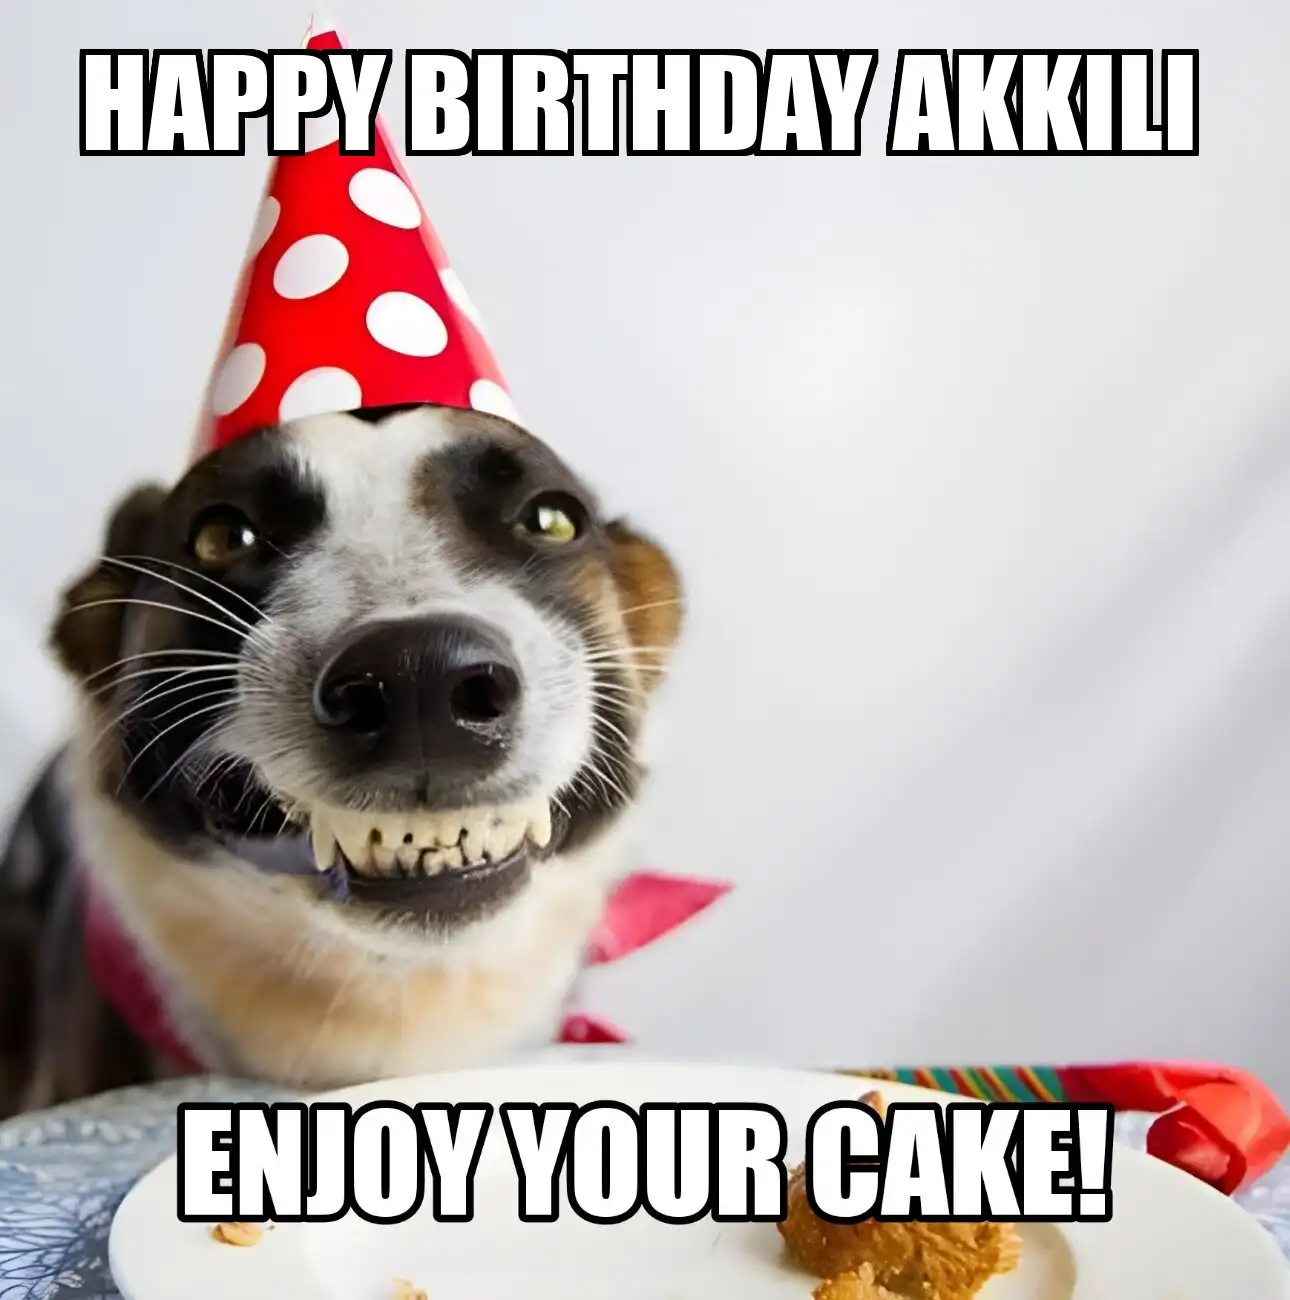 Happy Birthday Akkili Enjoy Your Cake Dog Meme